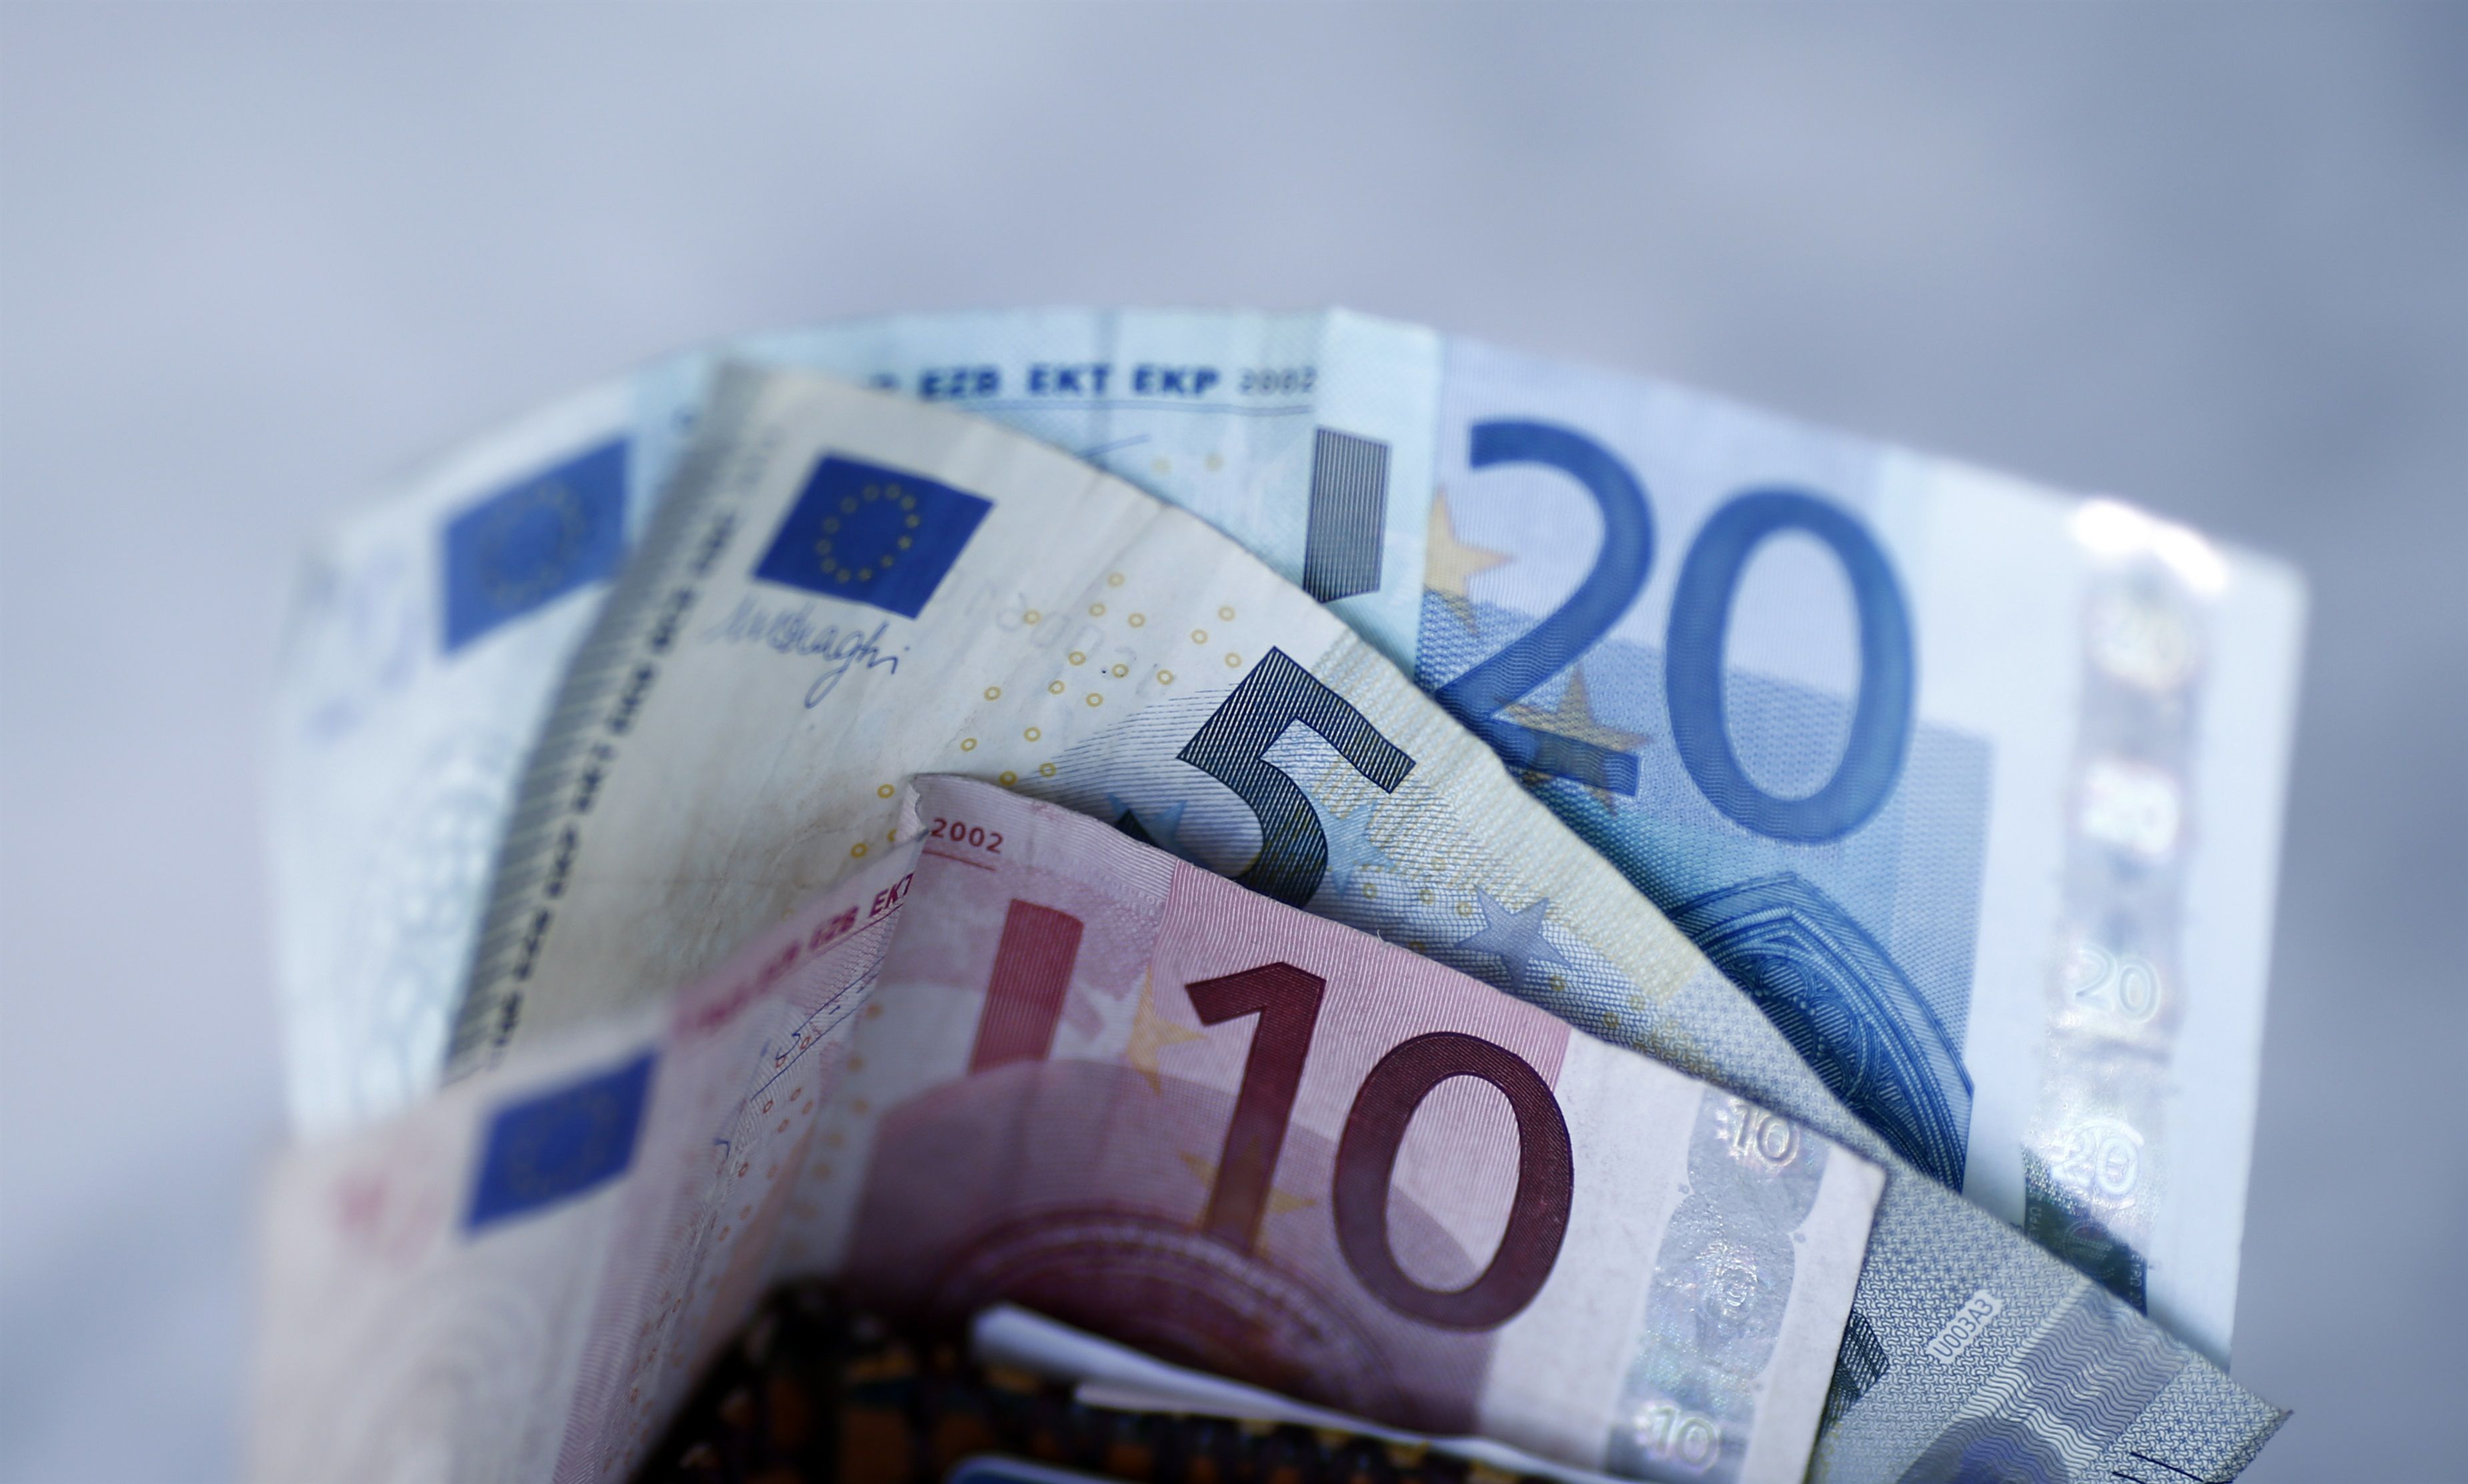 Comisiones bancarias: pagarlas puede salir más barato que contratar productos bonificados (Europa Press)